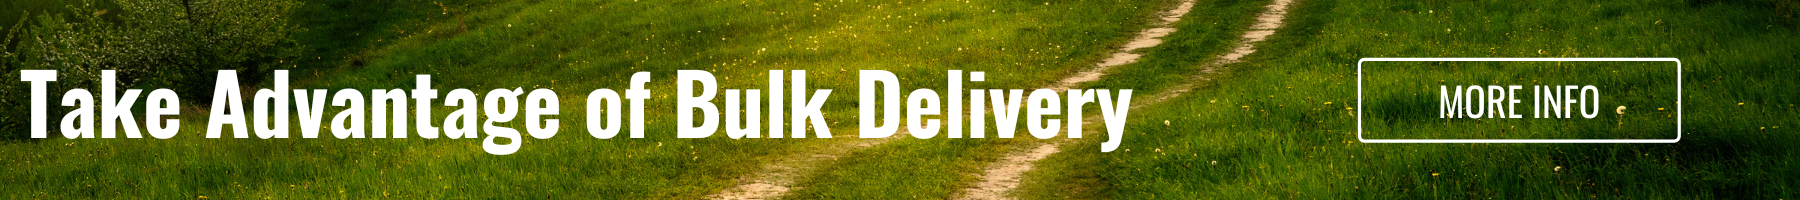 Bulk delivery banner